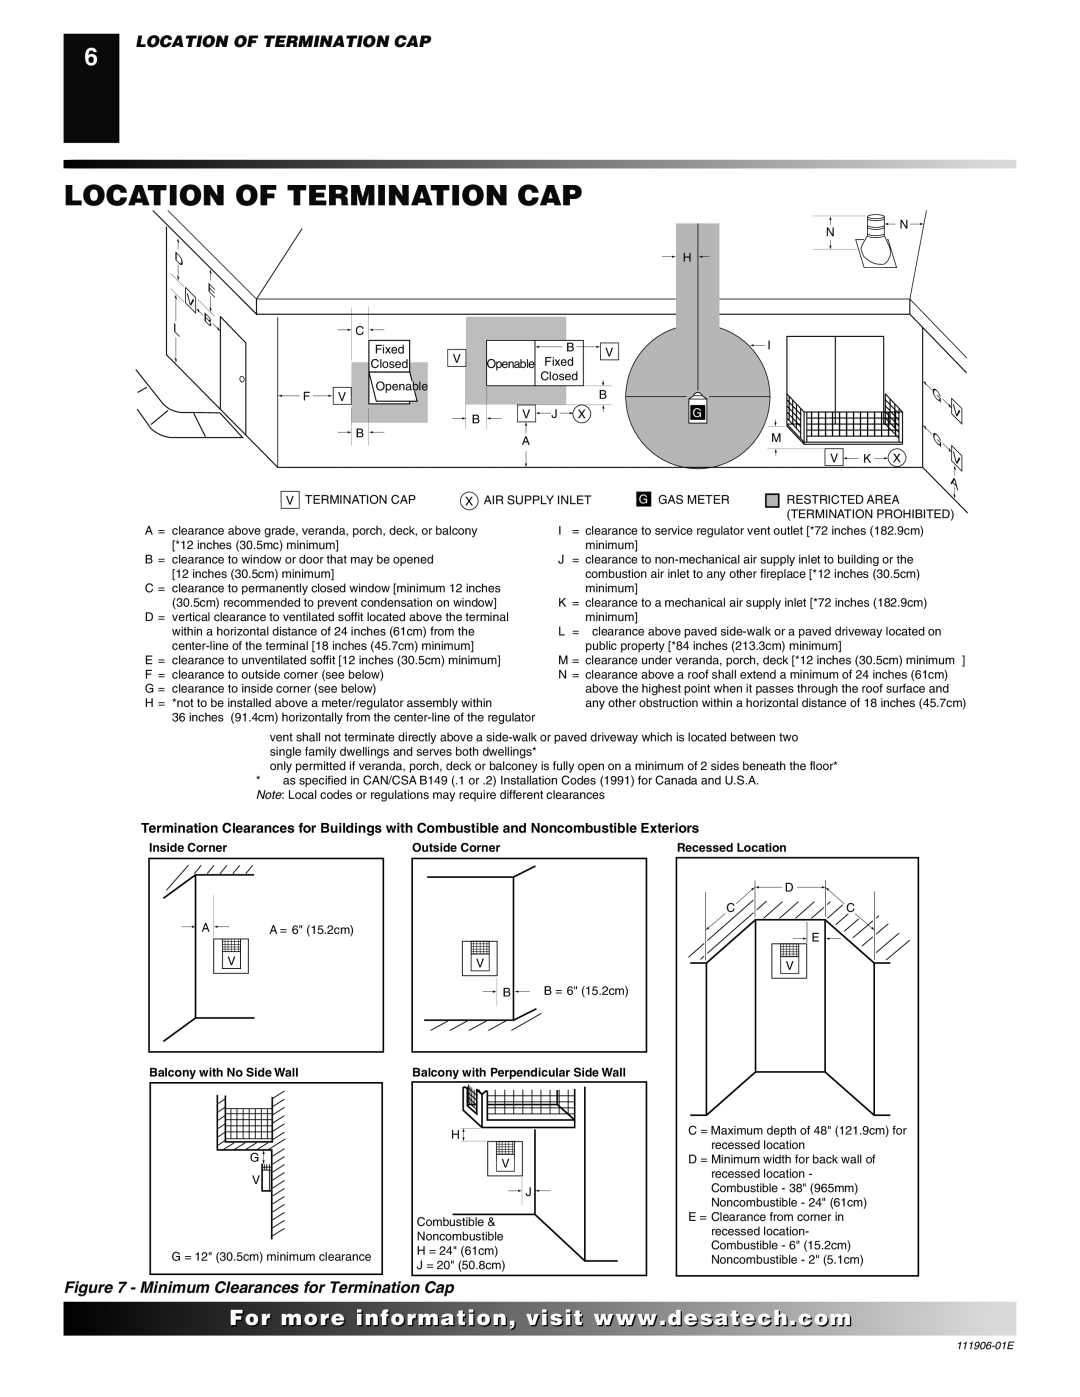 Desa V42P-A Location Of Termination Cap, D E B L, V G V A, For..com, Minimum Clearances for Termination Cap, Inside Corner 